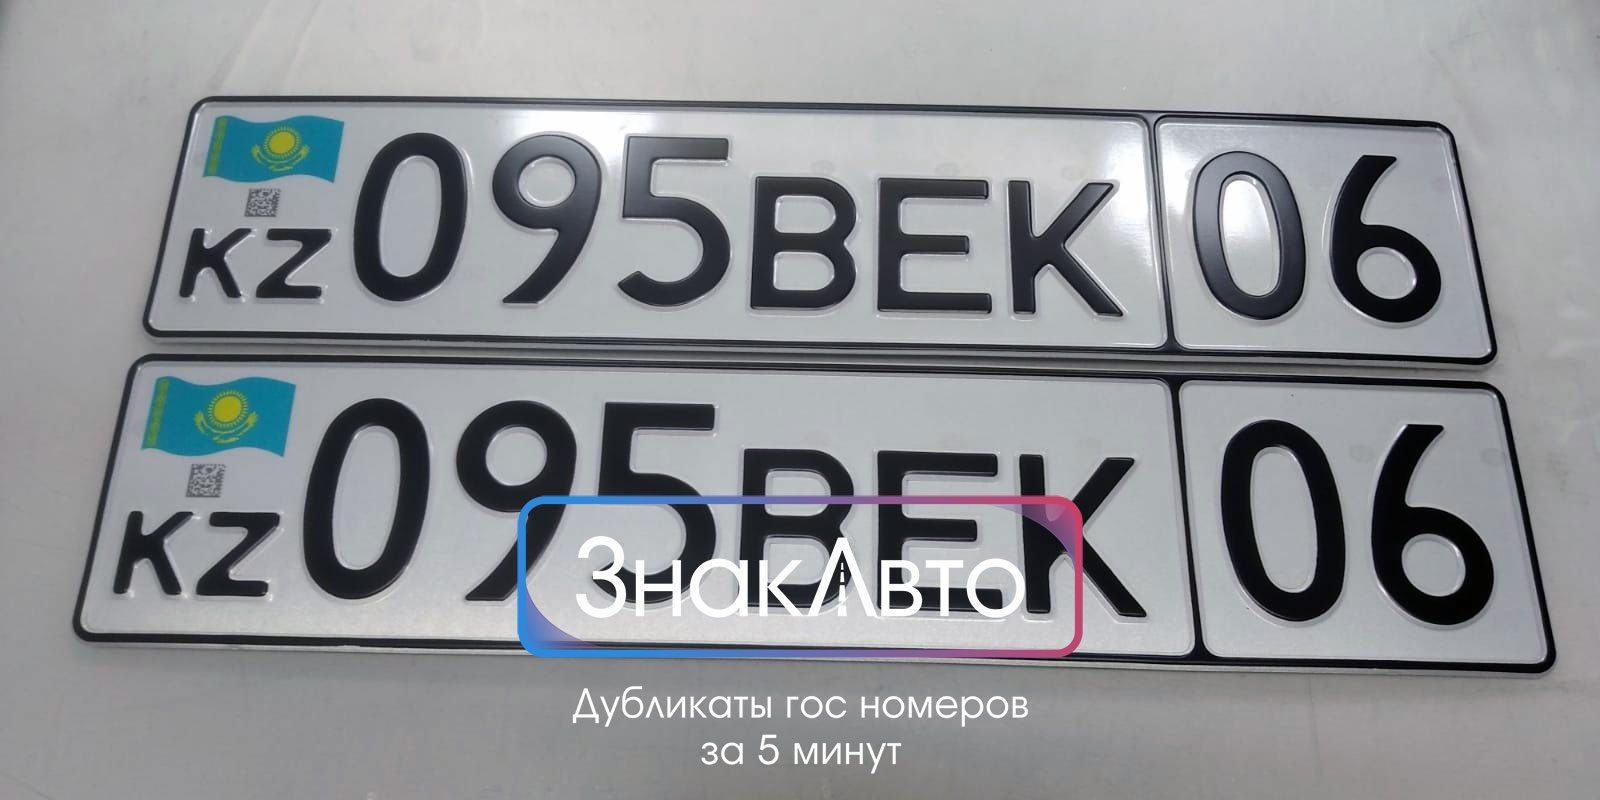 Дубликаты Казахских номеров на авто с qr кодом